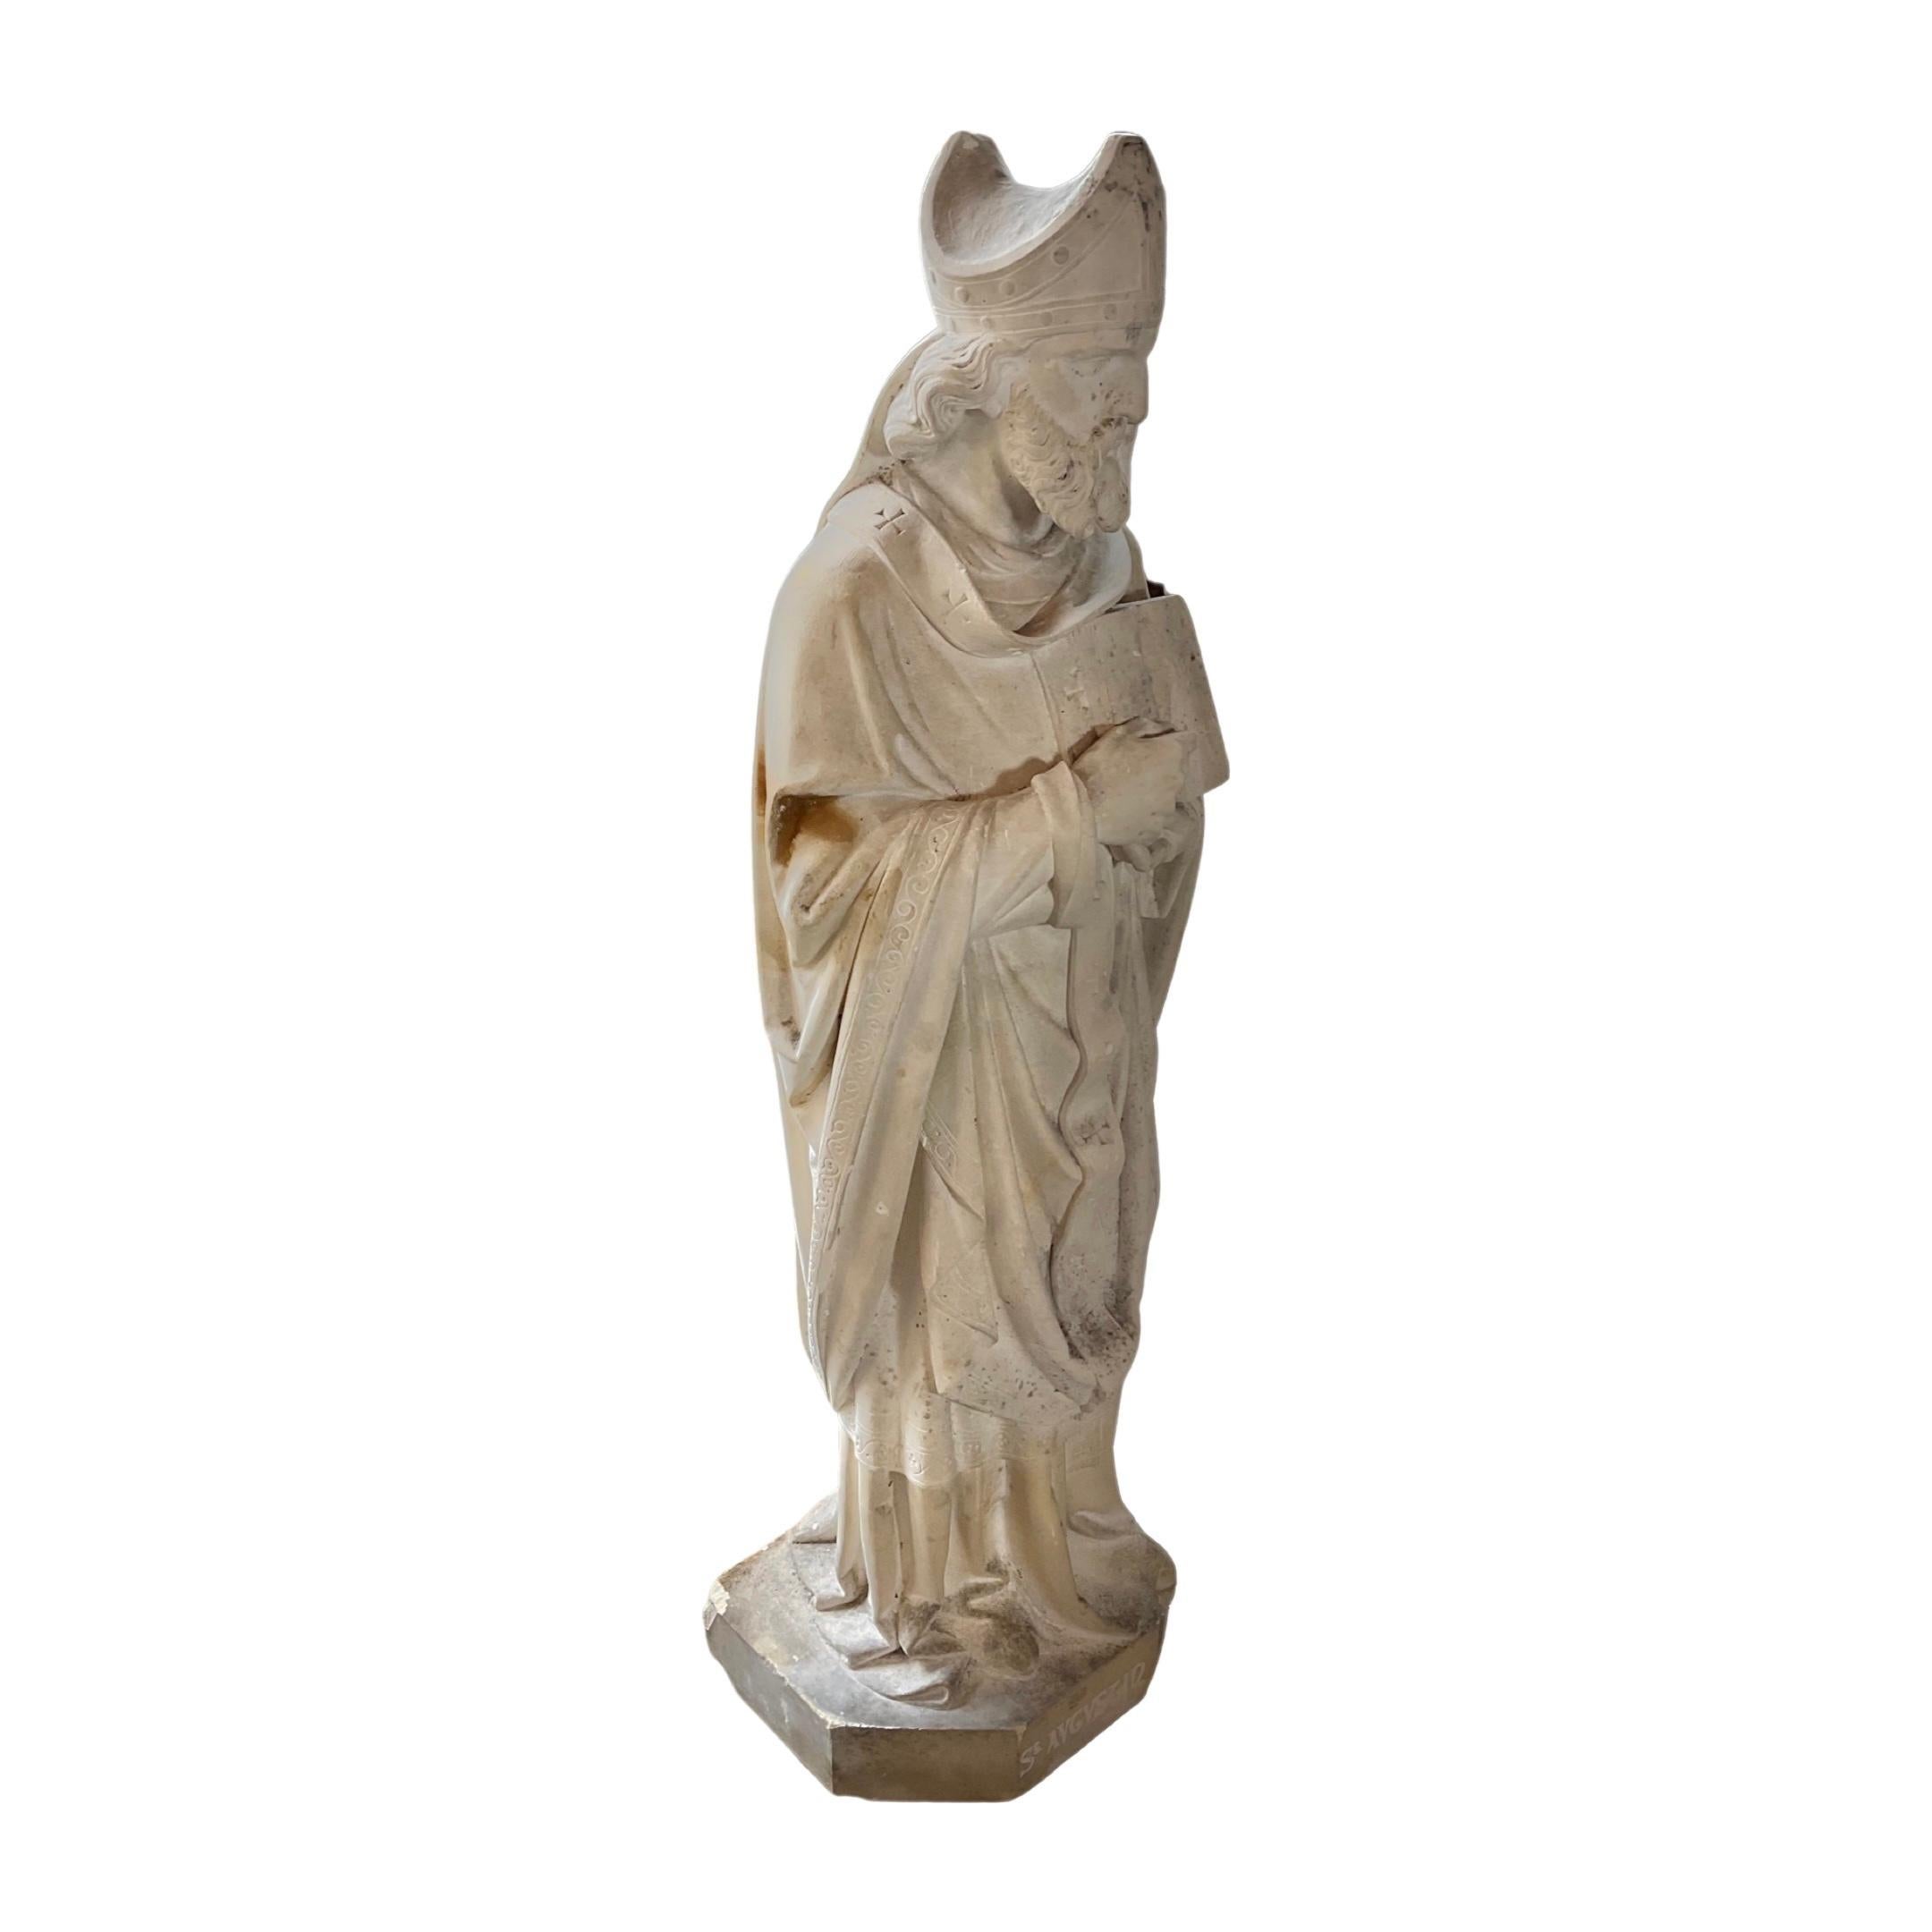 Cette sculpture de saint en pierre calcaire française du XVIIe siècle témoigne d'une extraordinaire compétence artistique. Elle a été fabriquée de manière experte à partir de pierre calcaire française afin de préserver son intégrité artistique.